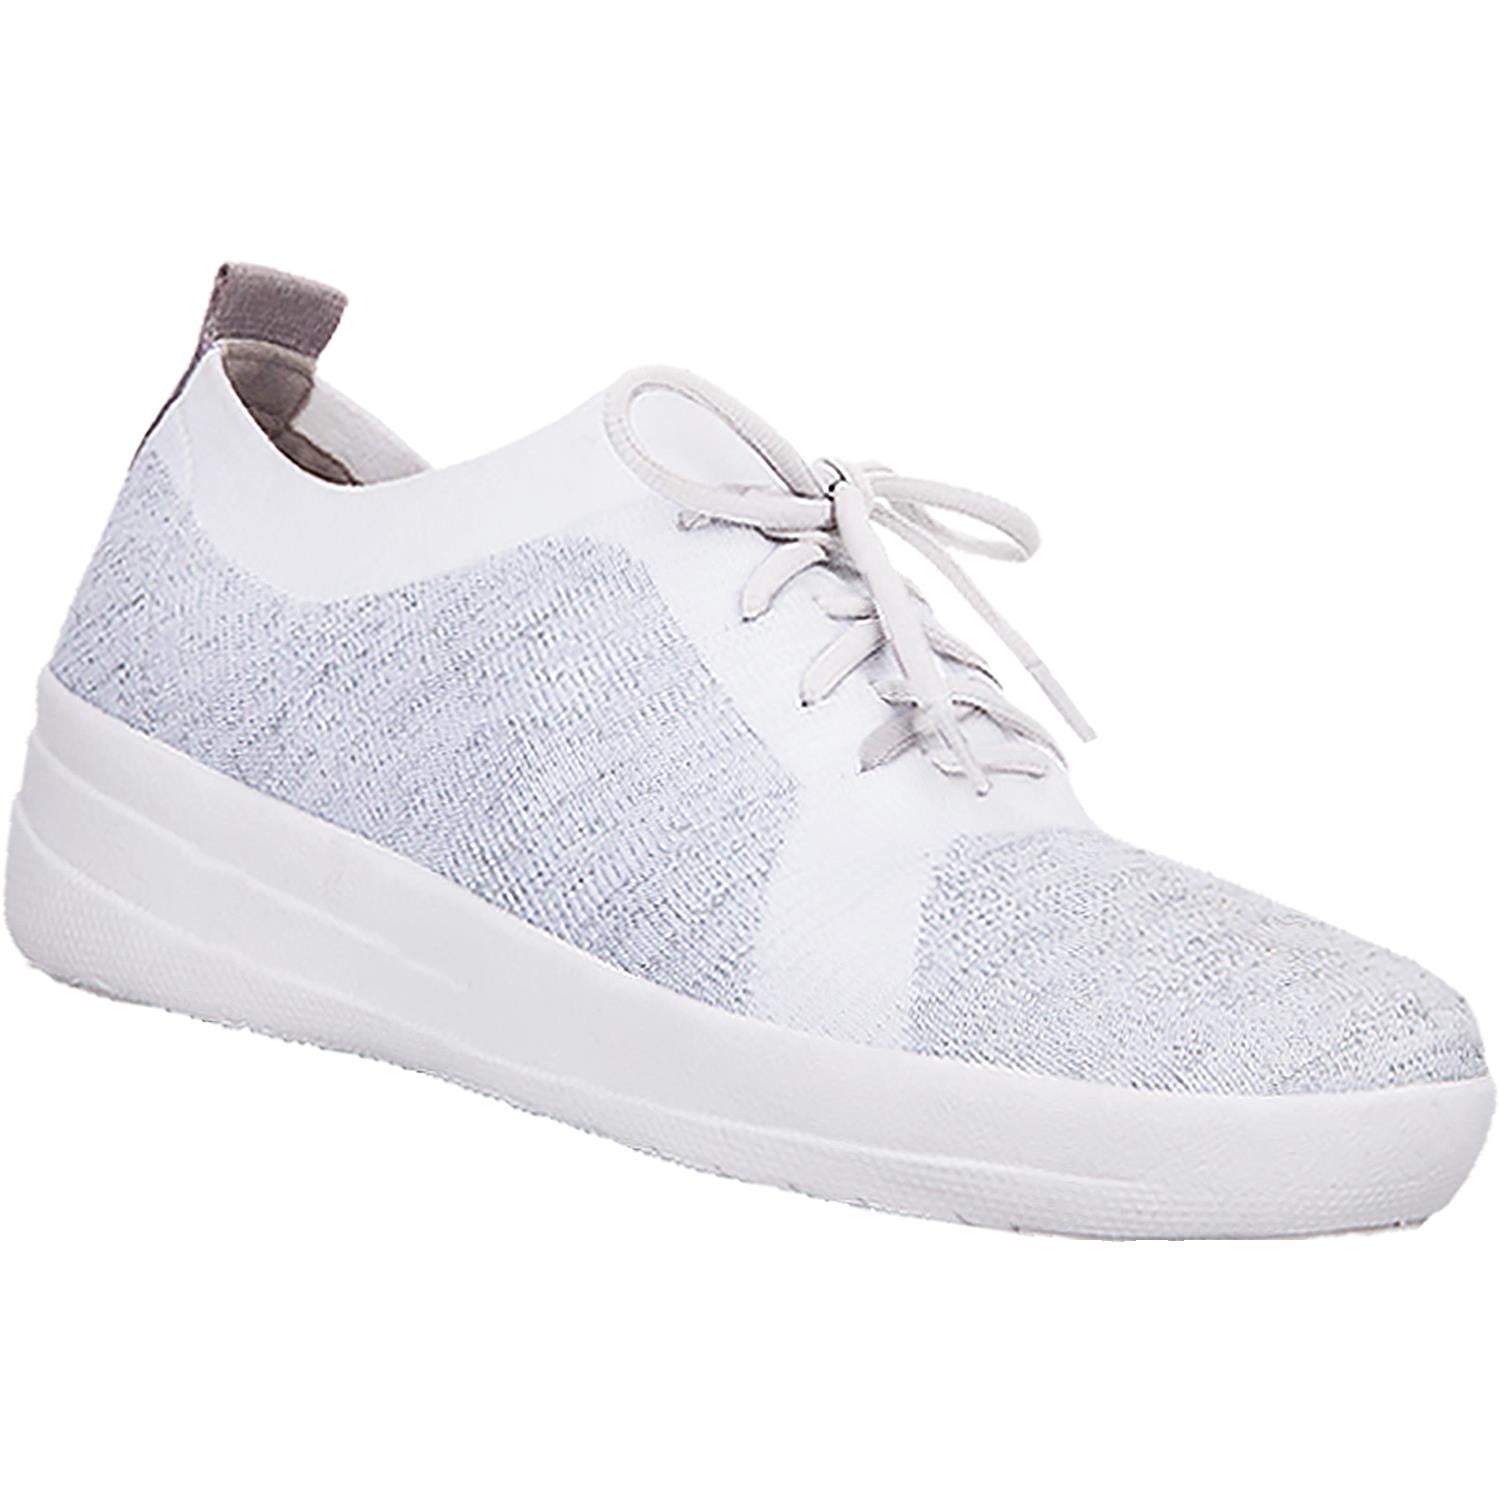 Women's Fit Flop F-Sporty Uberknit Sneakers White/Silver Nylo – Footwear etc.